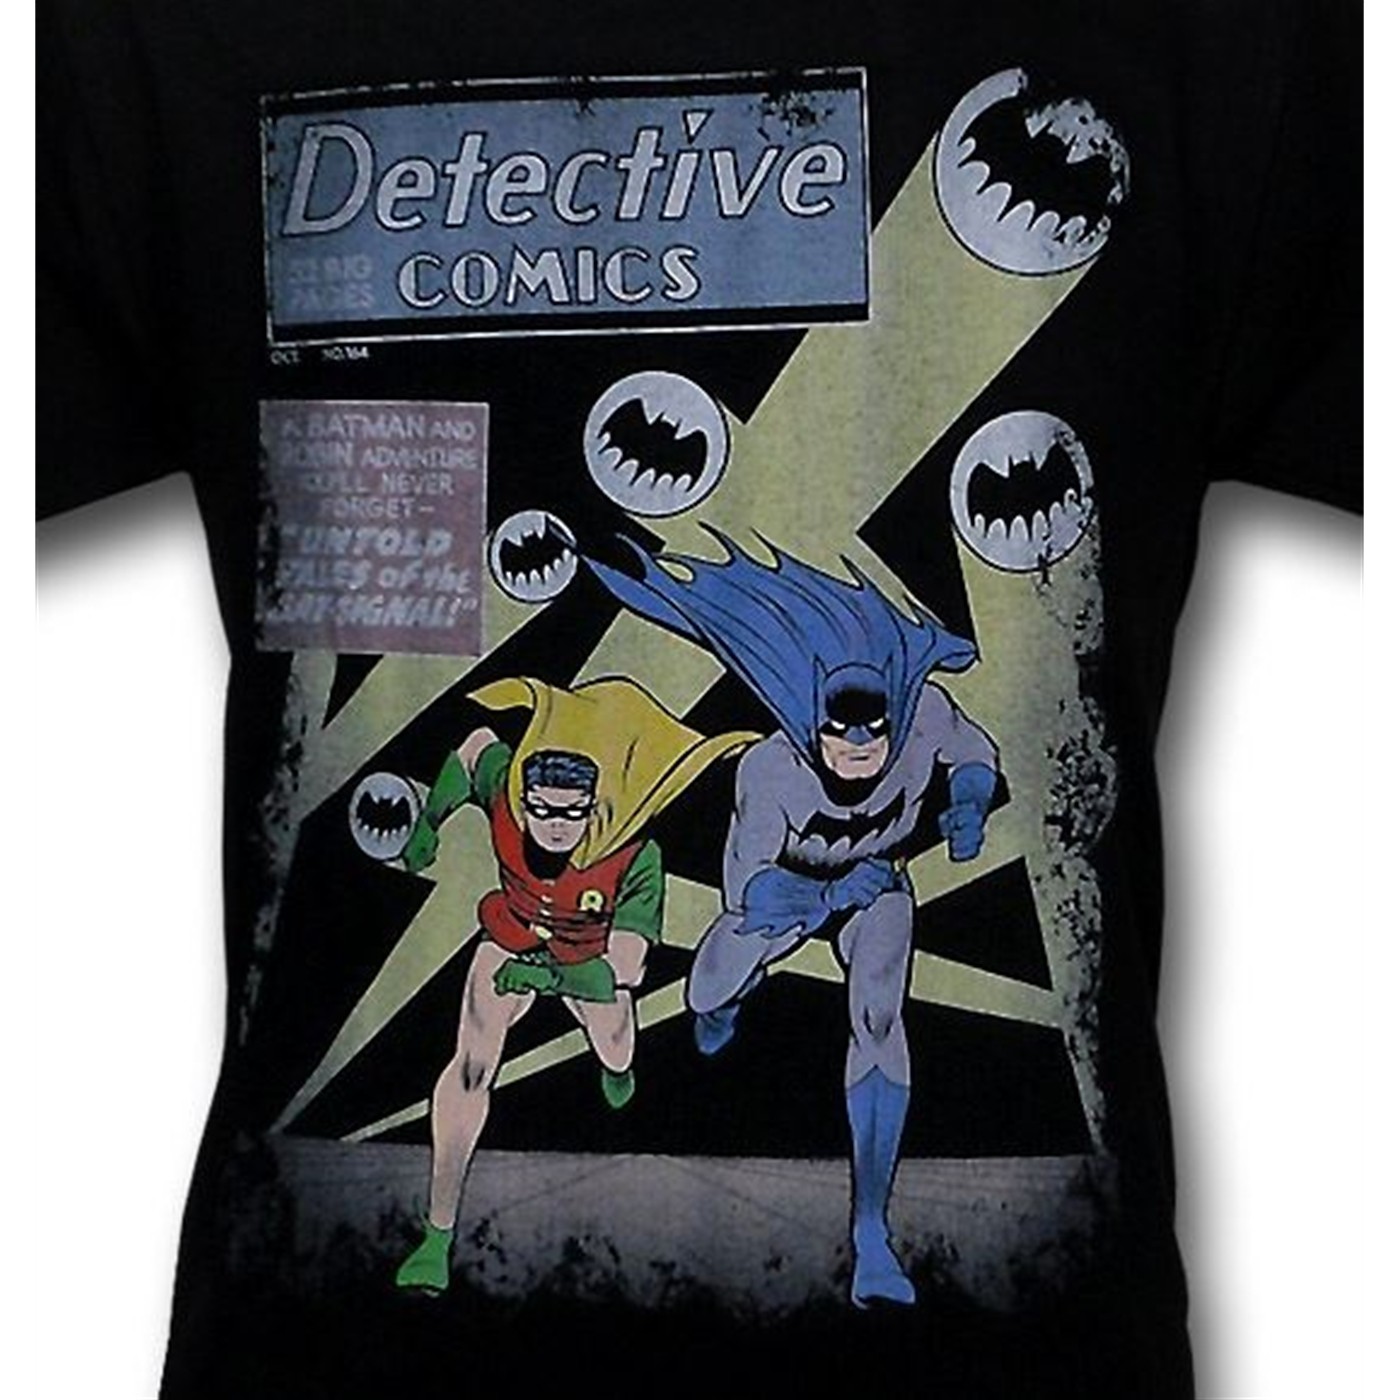 Batman Dynamic Duo Kids T-Shirt